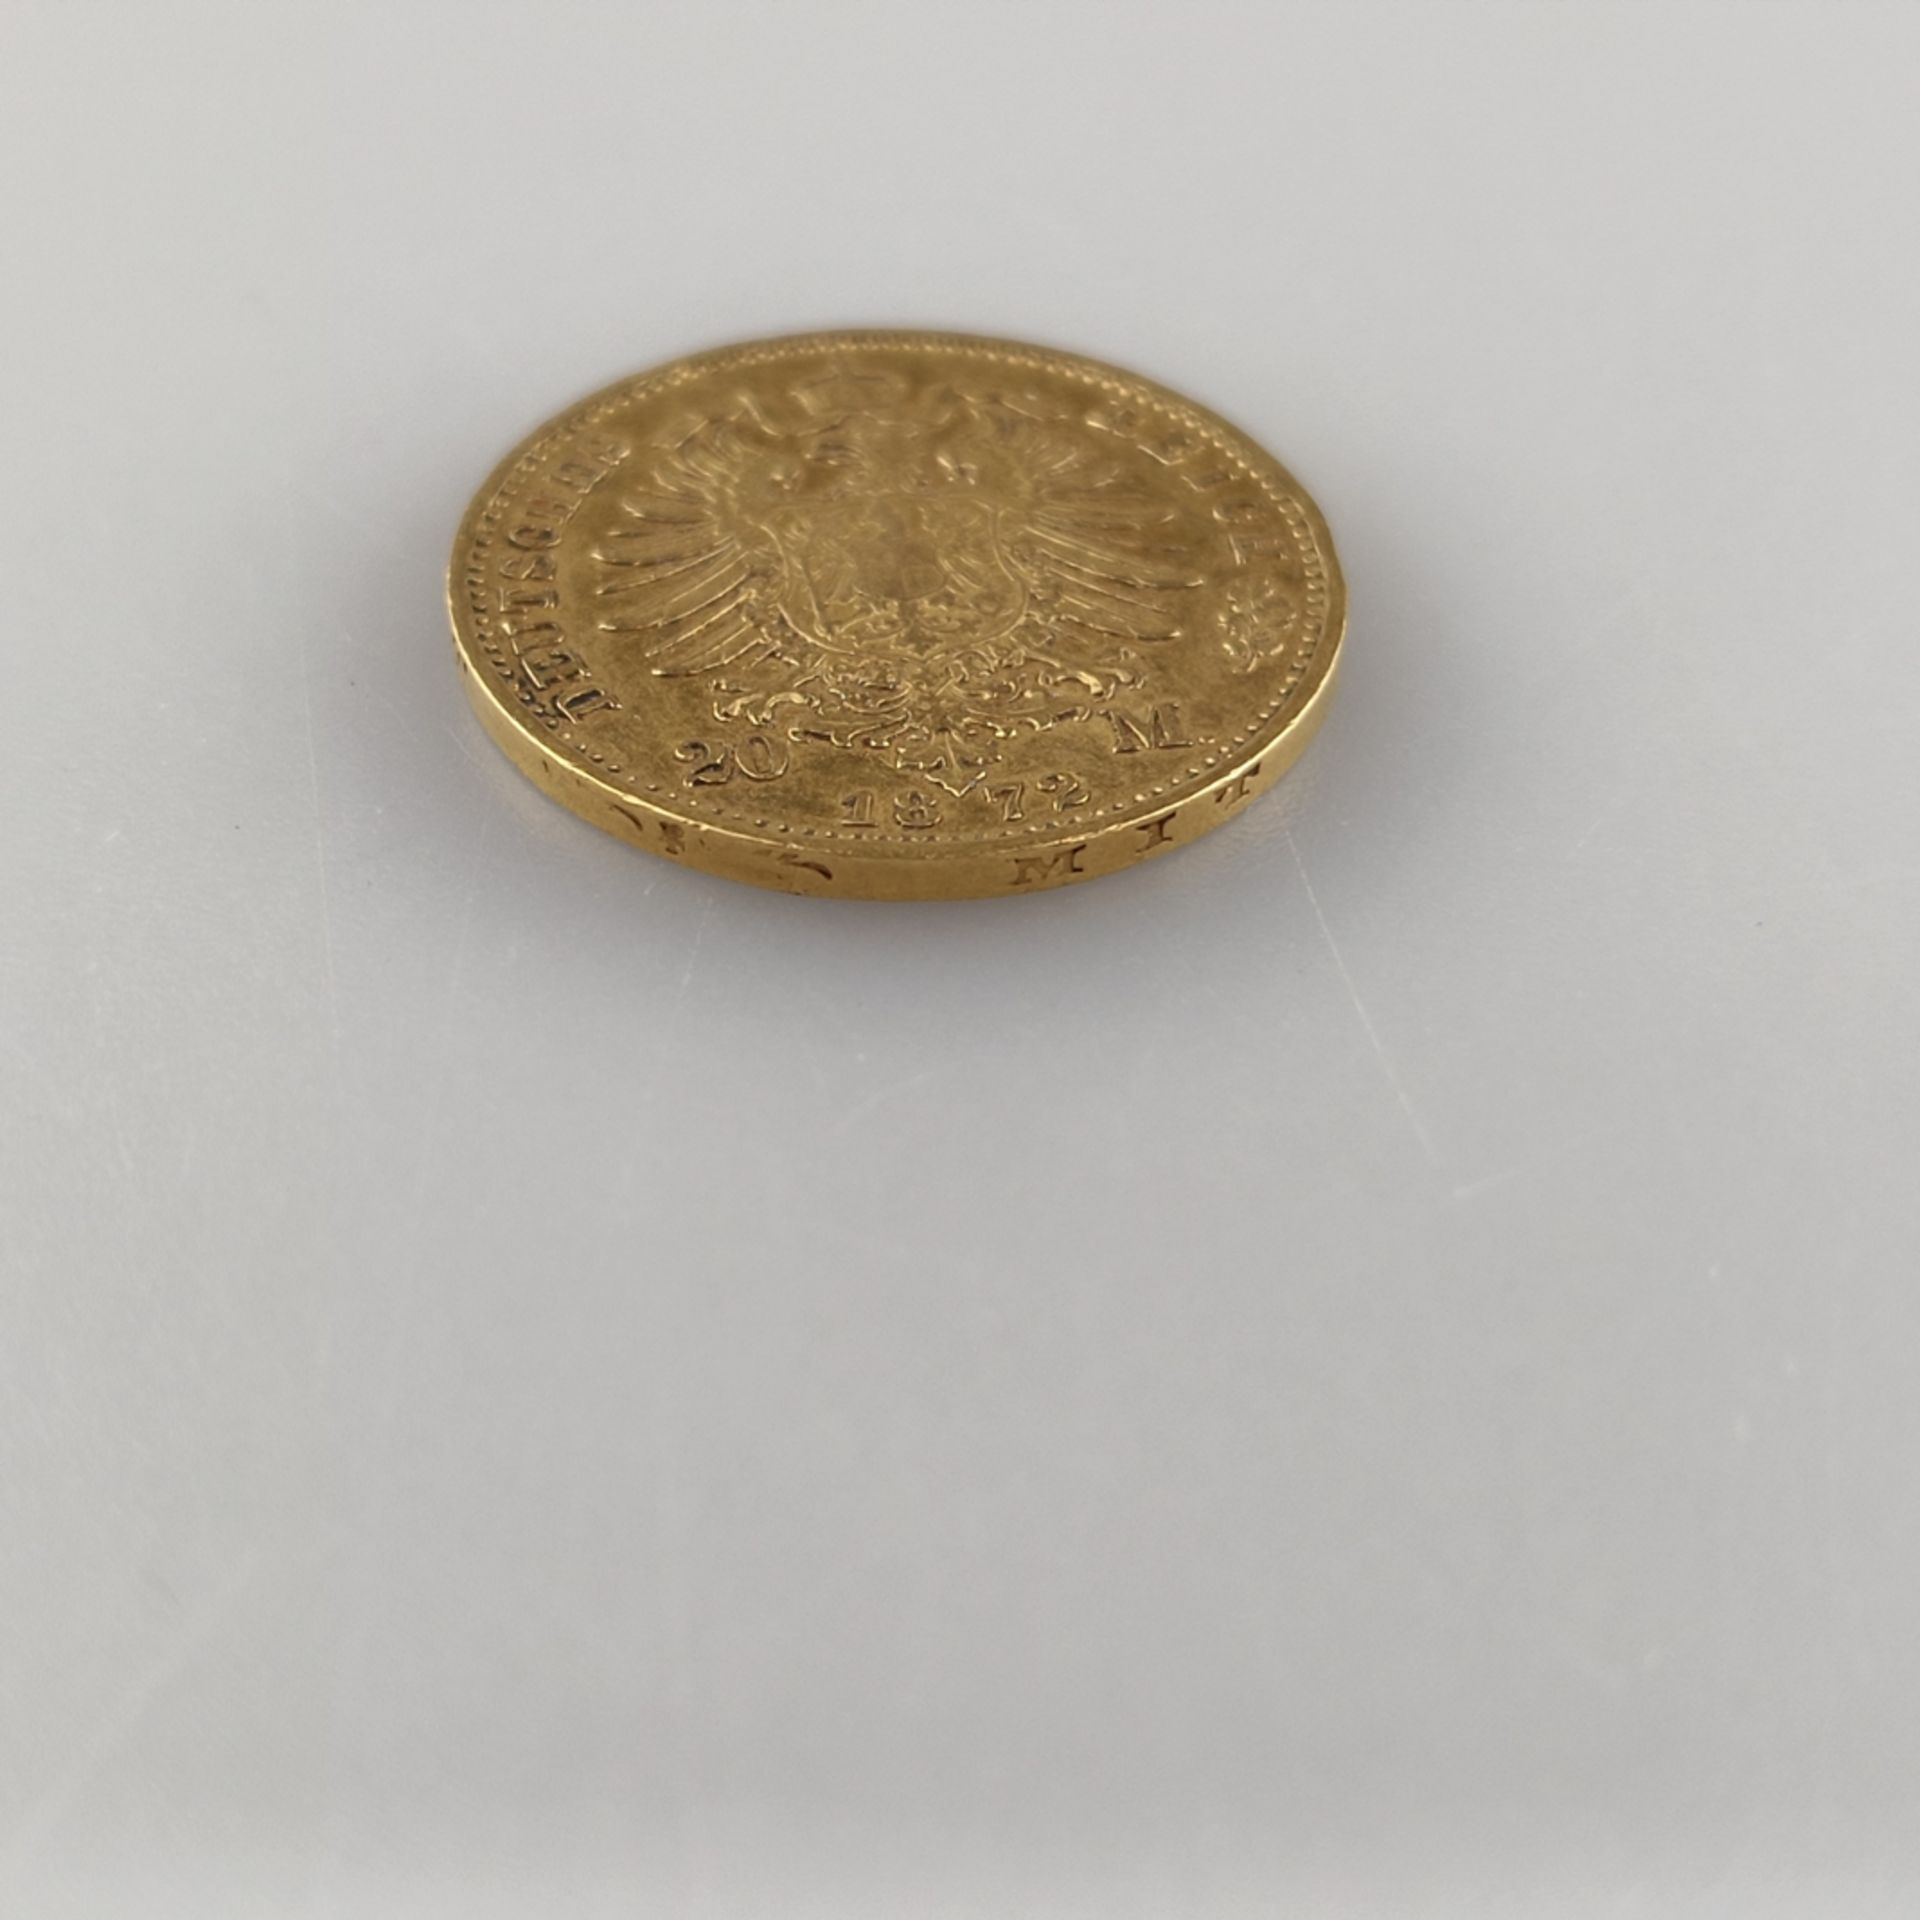 Goldmünze 20 Mark 1872- Deutsches Kaiserreich, Wilhelm II Deutscher Kaiser König v. Preußen, 900/00 - Image 3 of 3